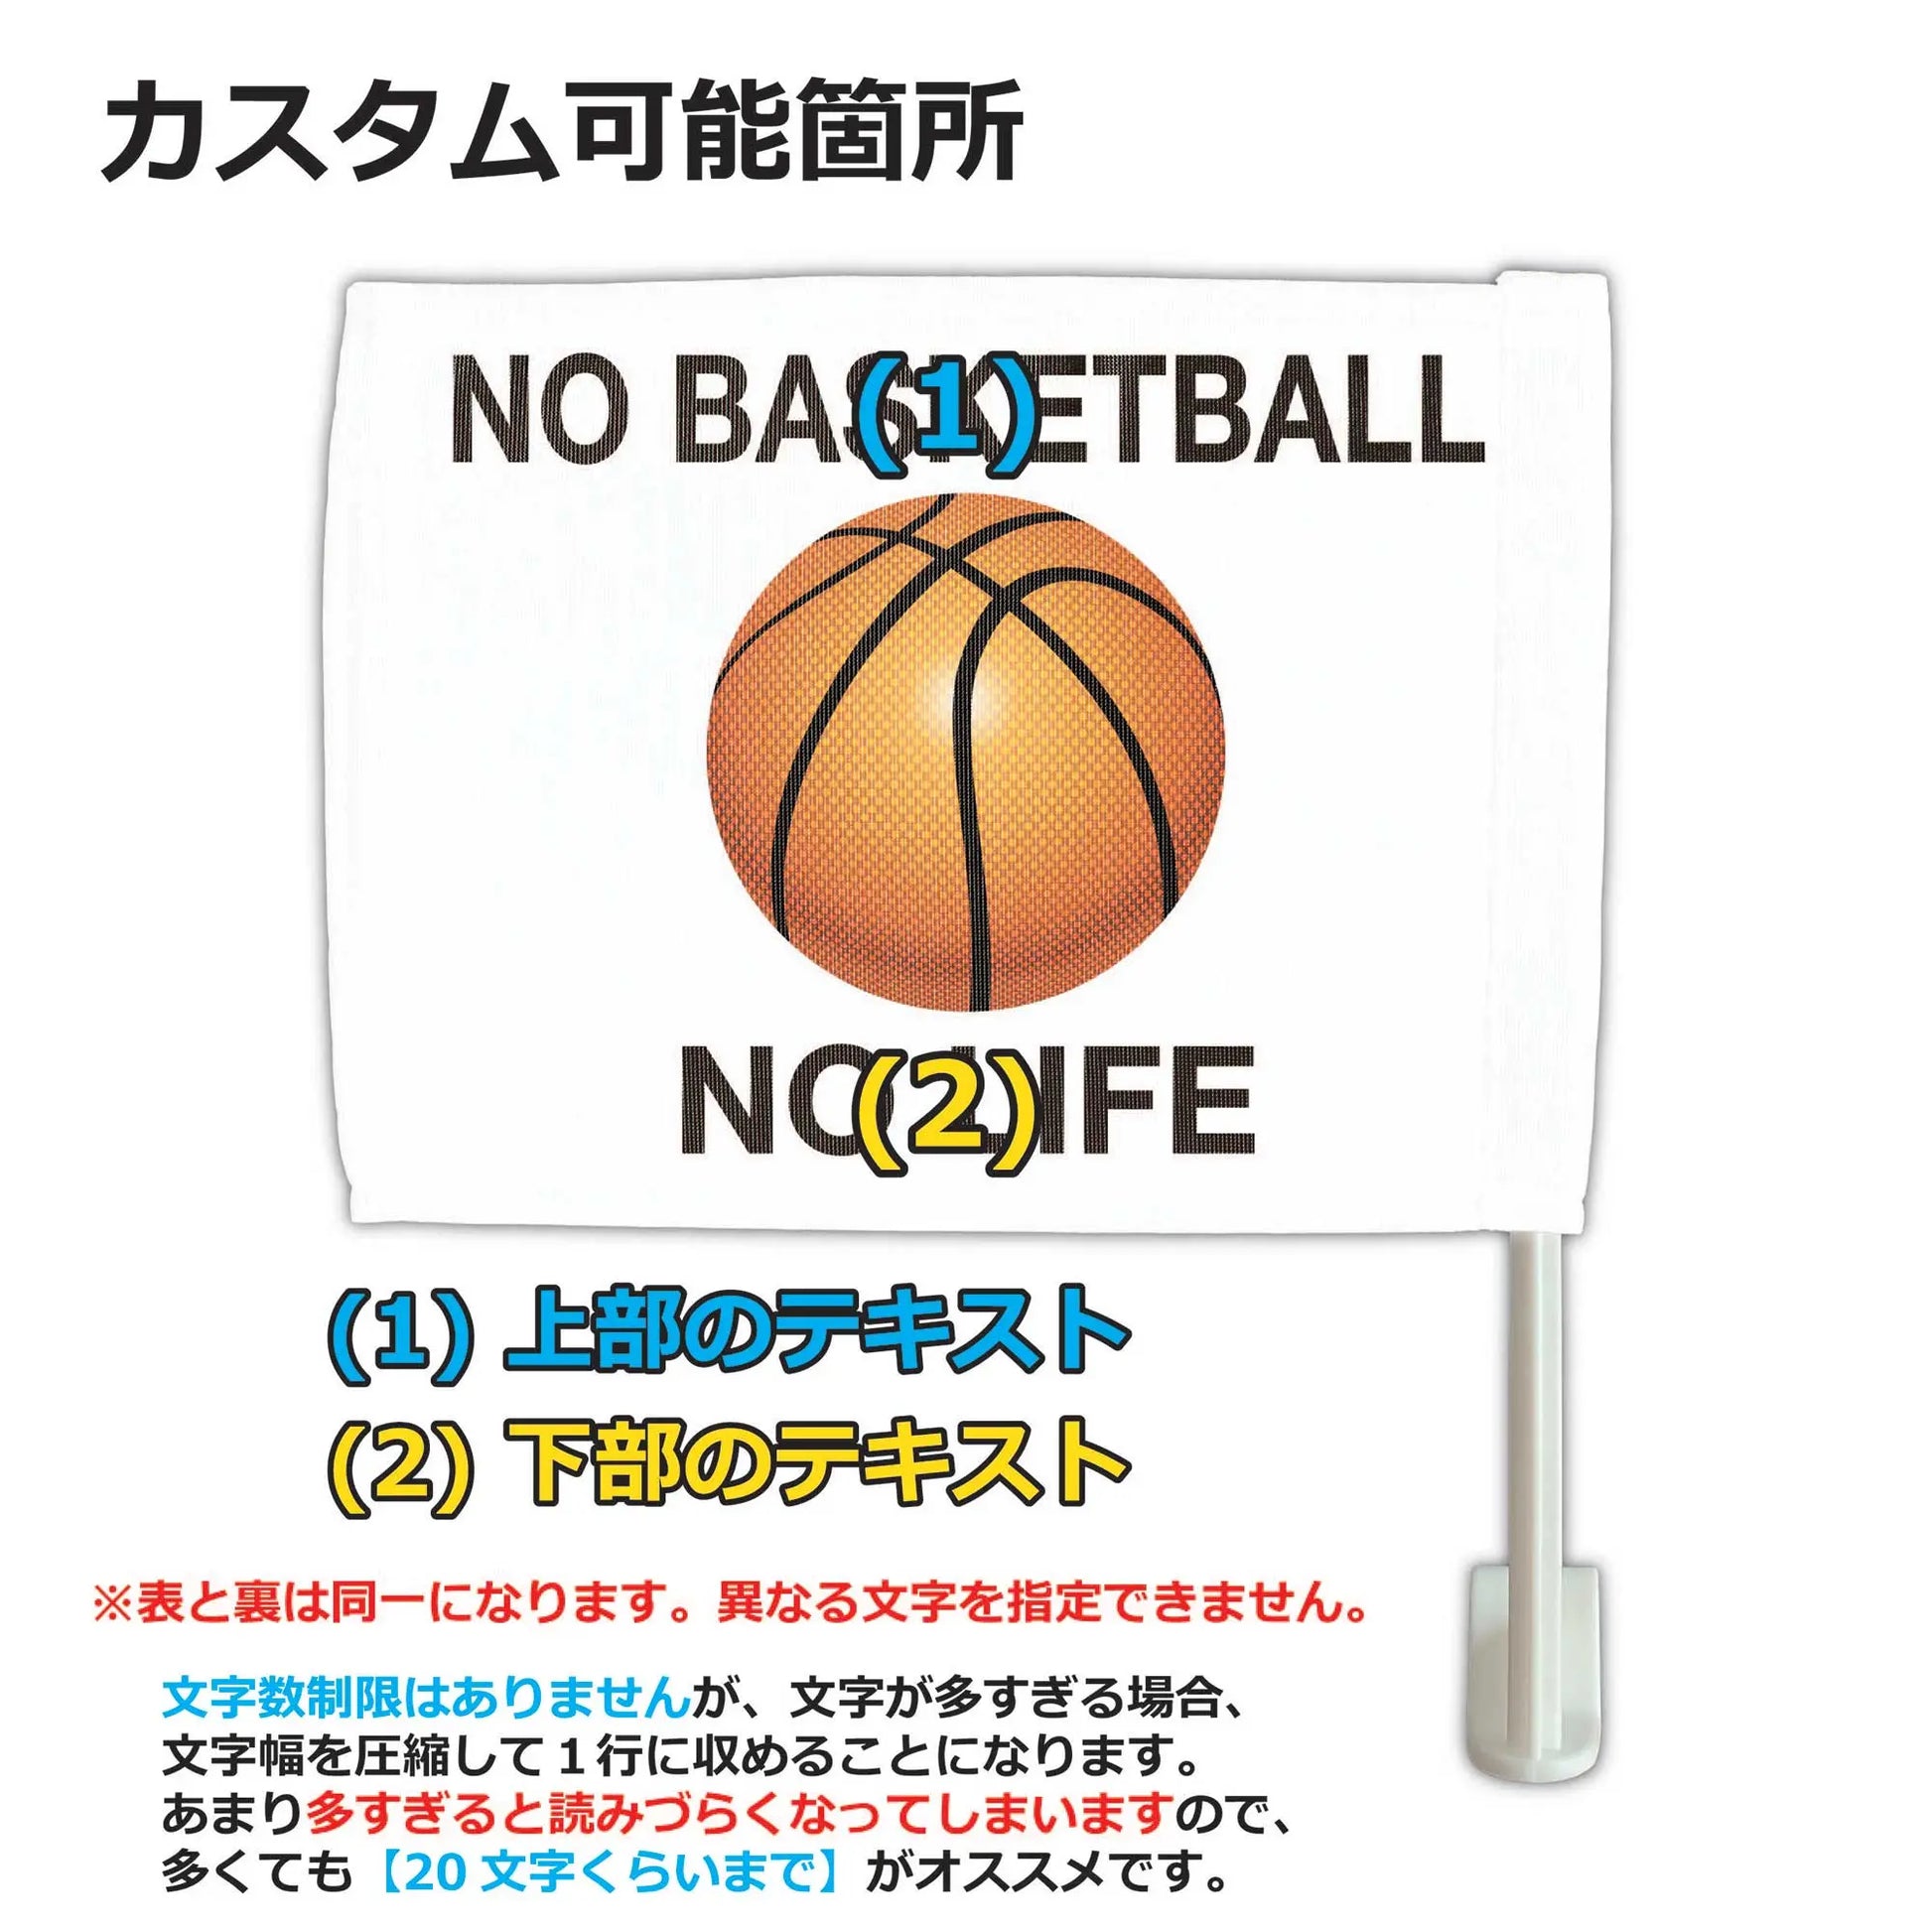 【カーフラッグ】BASKETBALL/バスケットボール/自動車用オリジナルフラッグ・旗 PL8HERO